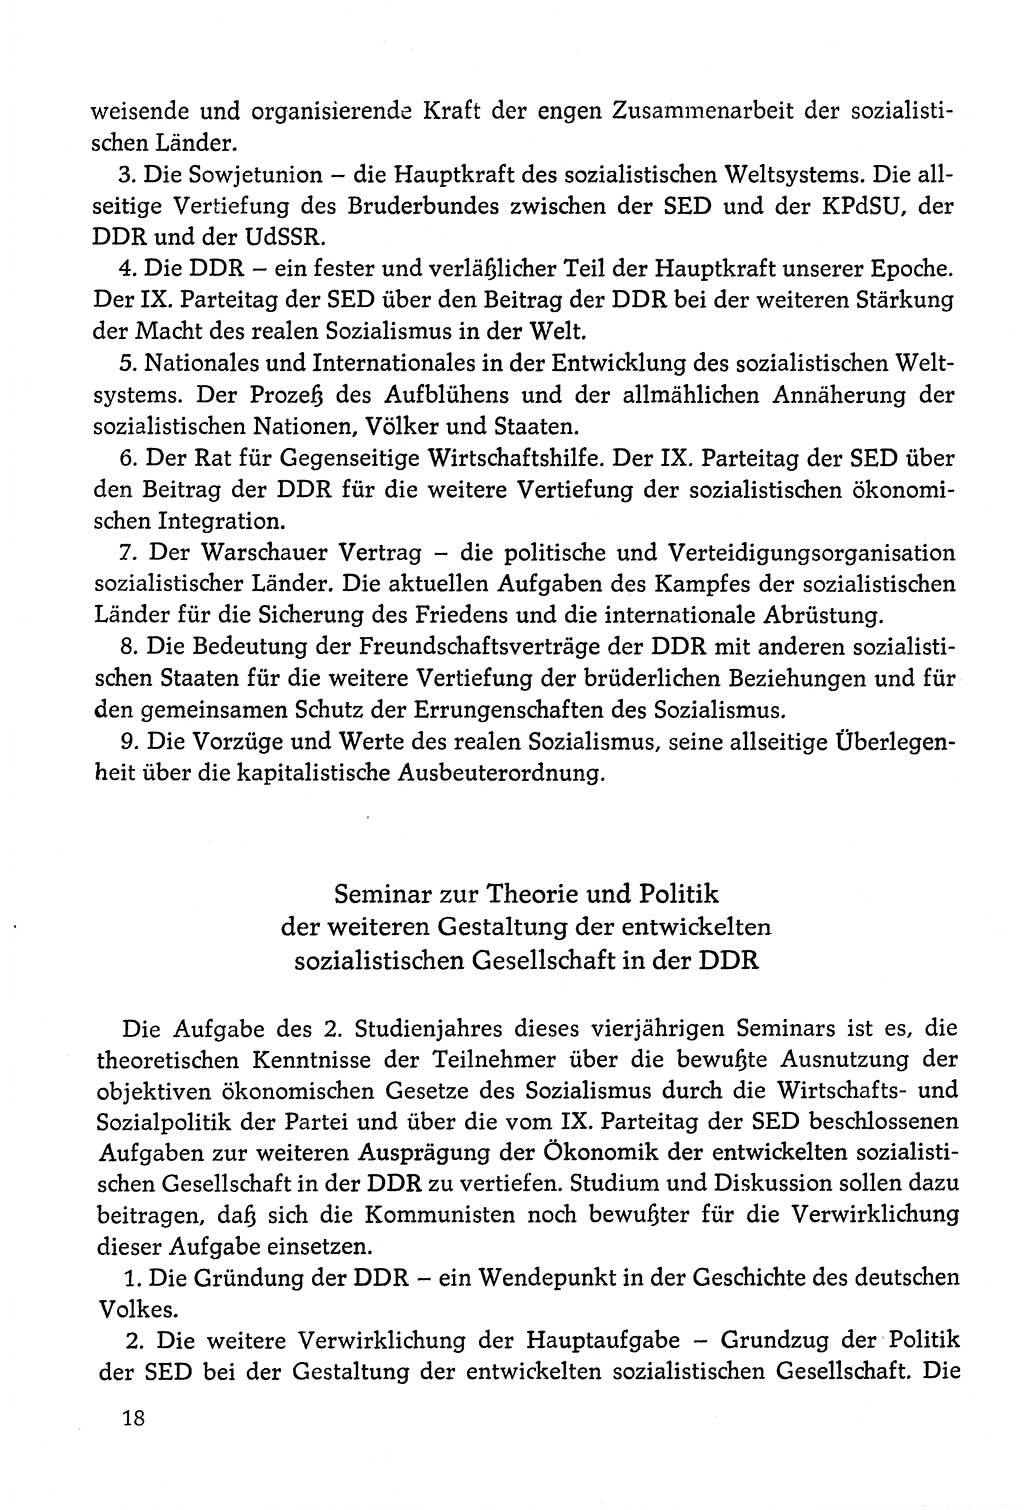 Dokumente der Sozialistischen Einheitspartei Deutschlands (SED) [Deutsche Demokratische Republik (DDR)] 1978-1979, Seite 18 (Dok. SED DDR 1978-1979, S. 18)